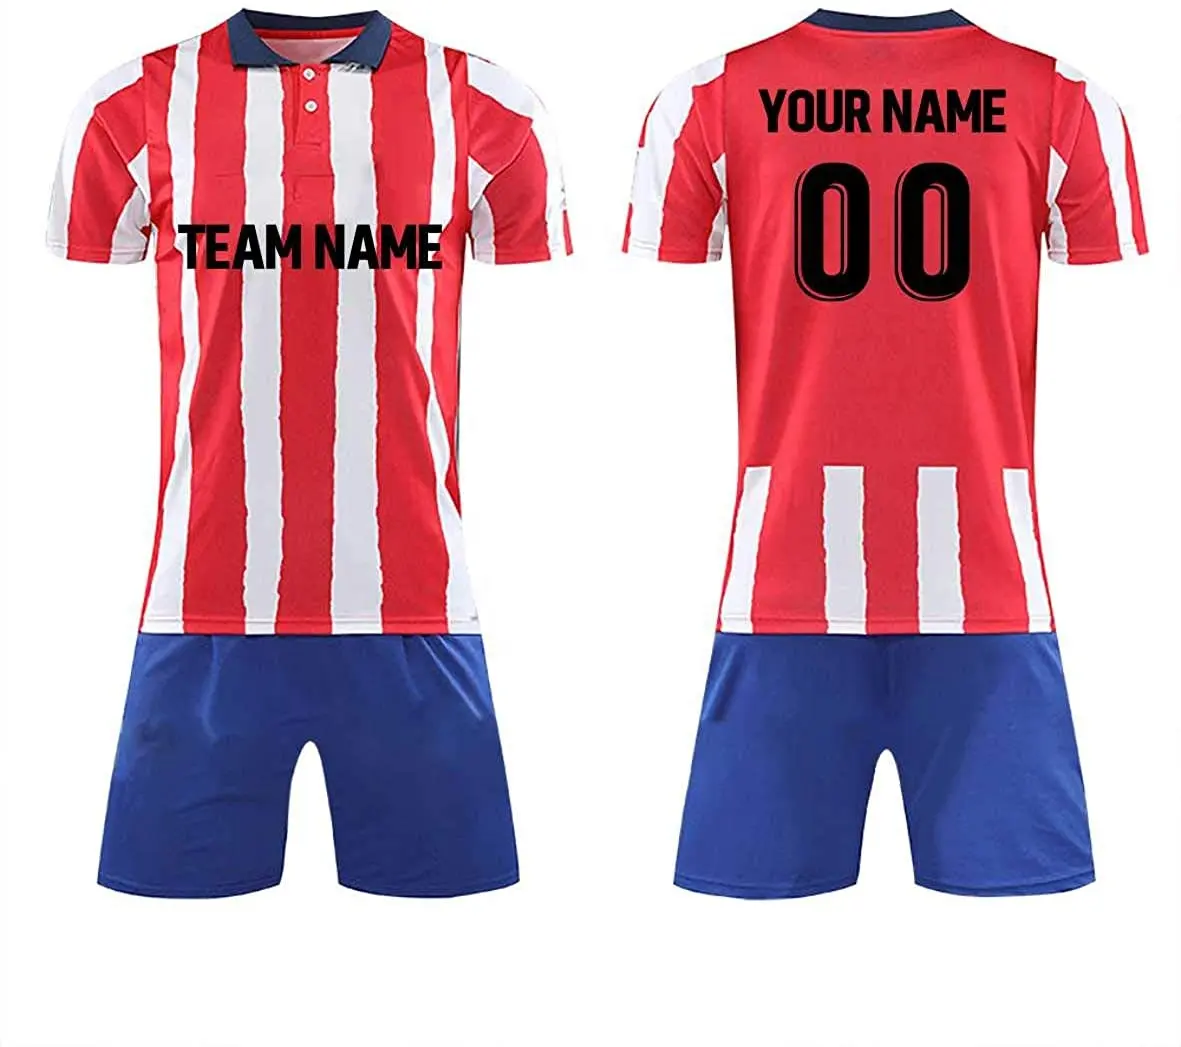 Nouveau modèle 20/21 fournisseur de maillots de football avec logo acheter maillot de football thaïlande LOGO personnalisé vêtements de sport tissu personnalisé